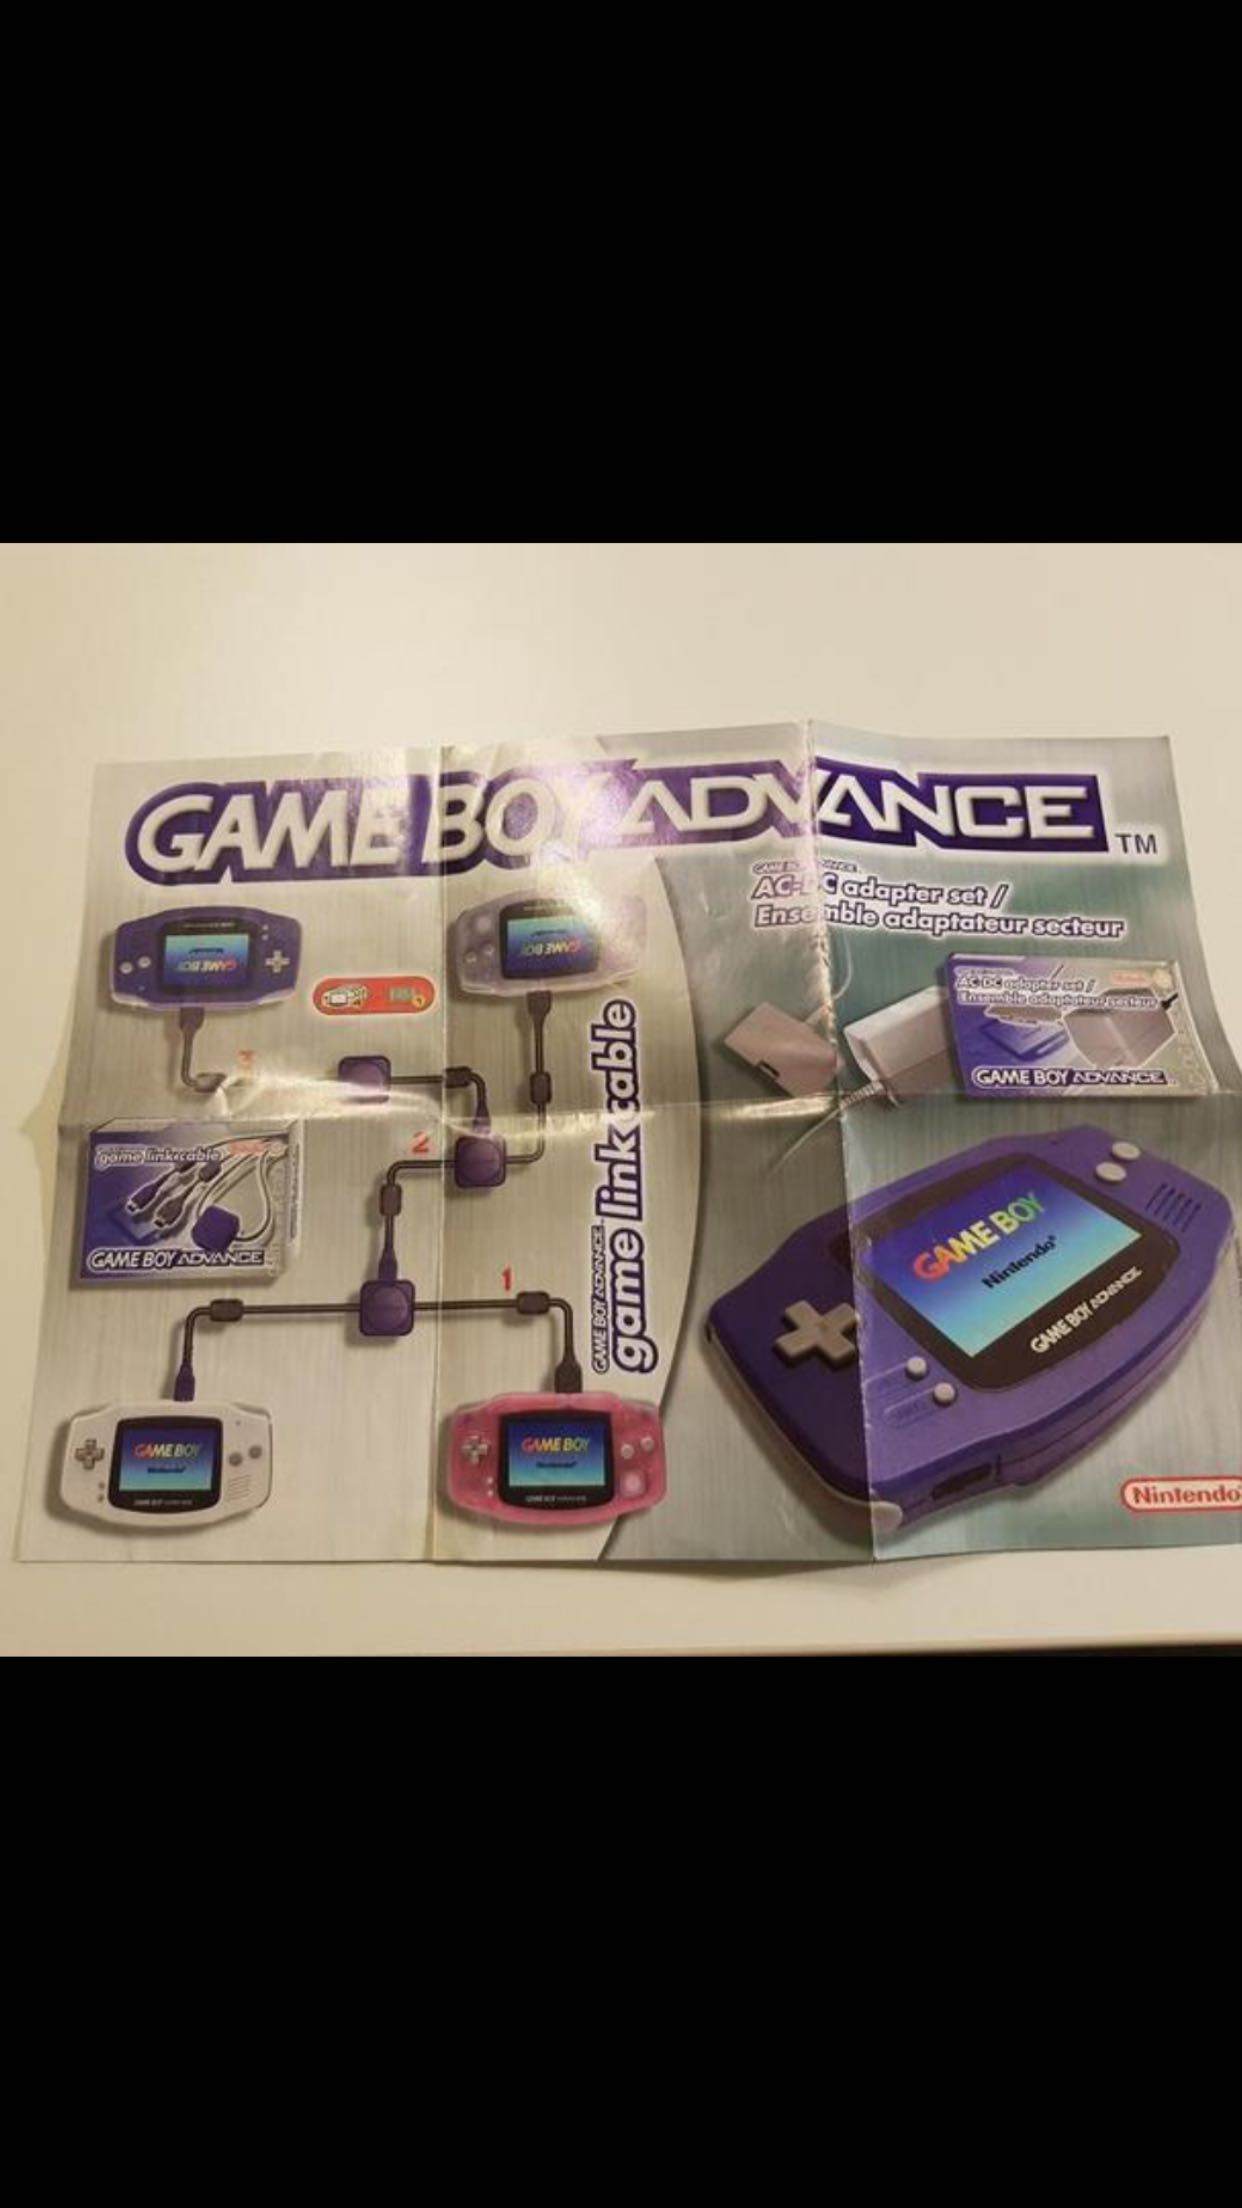 Gameboy Advance GBA + pudełko + instrukcja itp